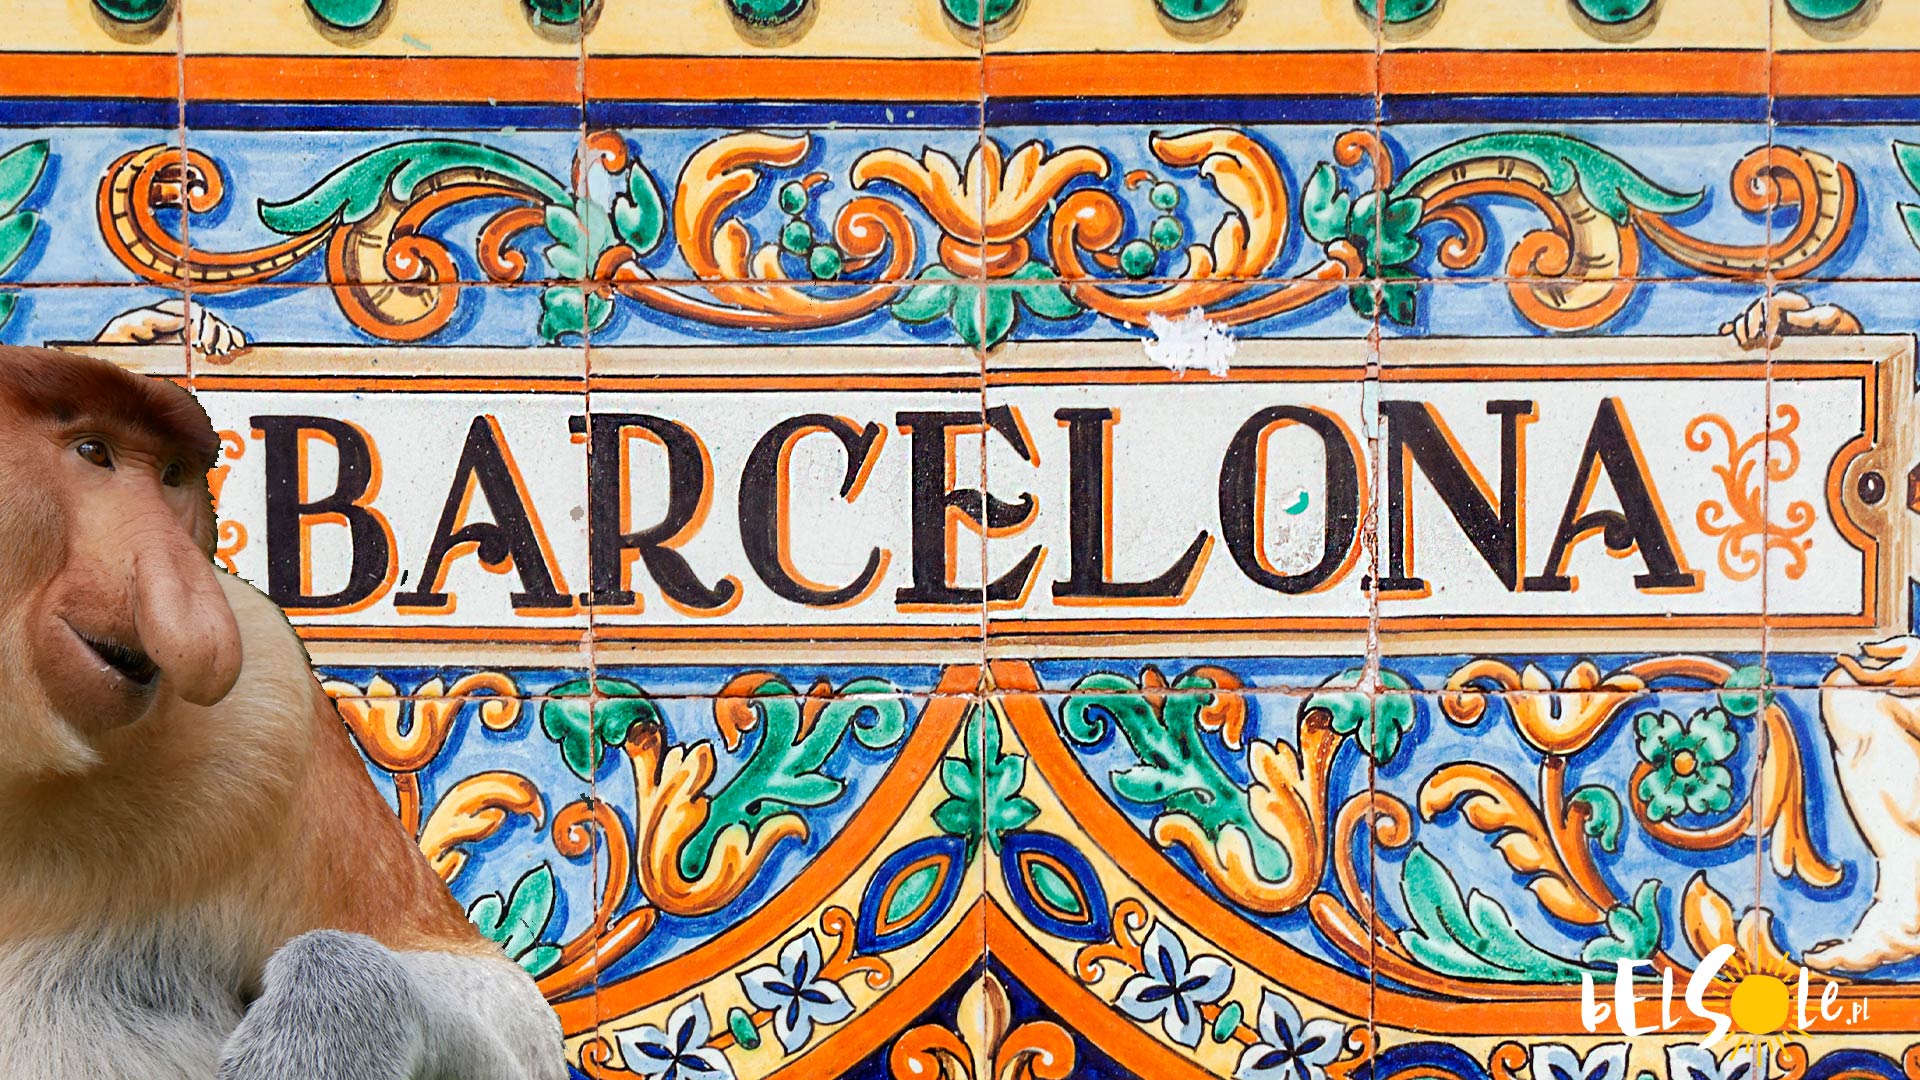 tanie darmowe zwiedzanie Barcelony